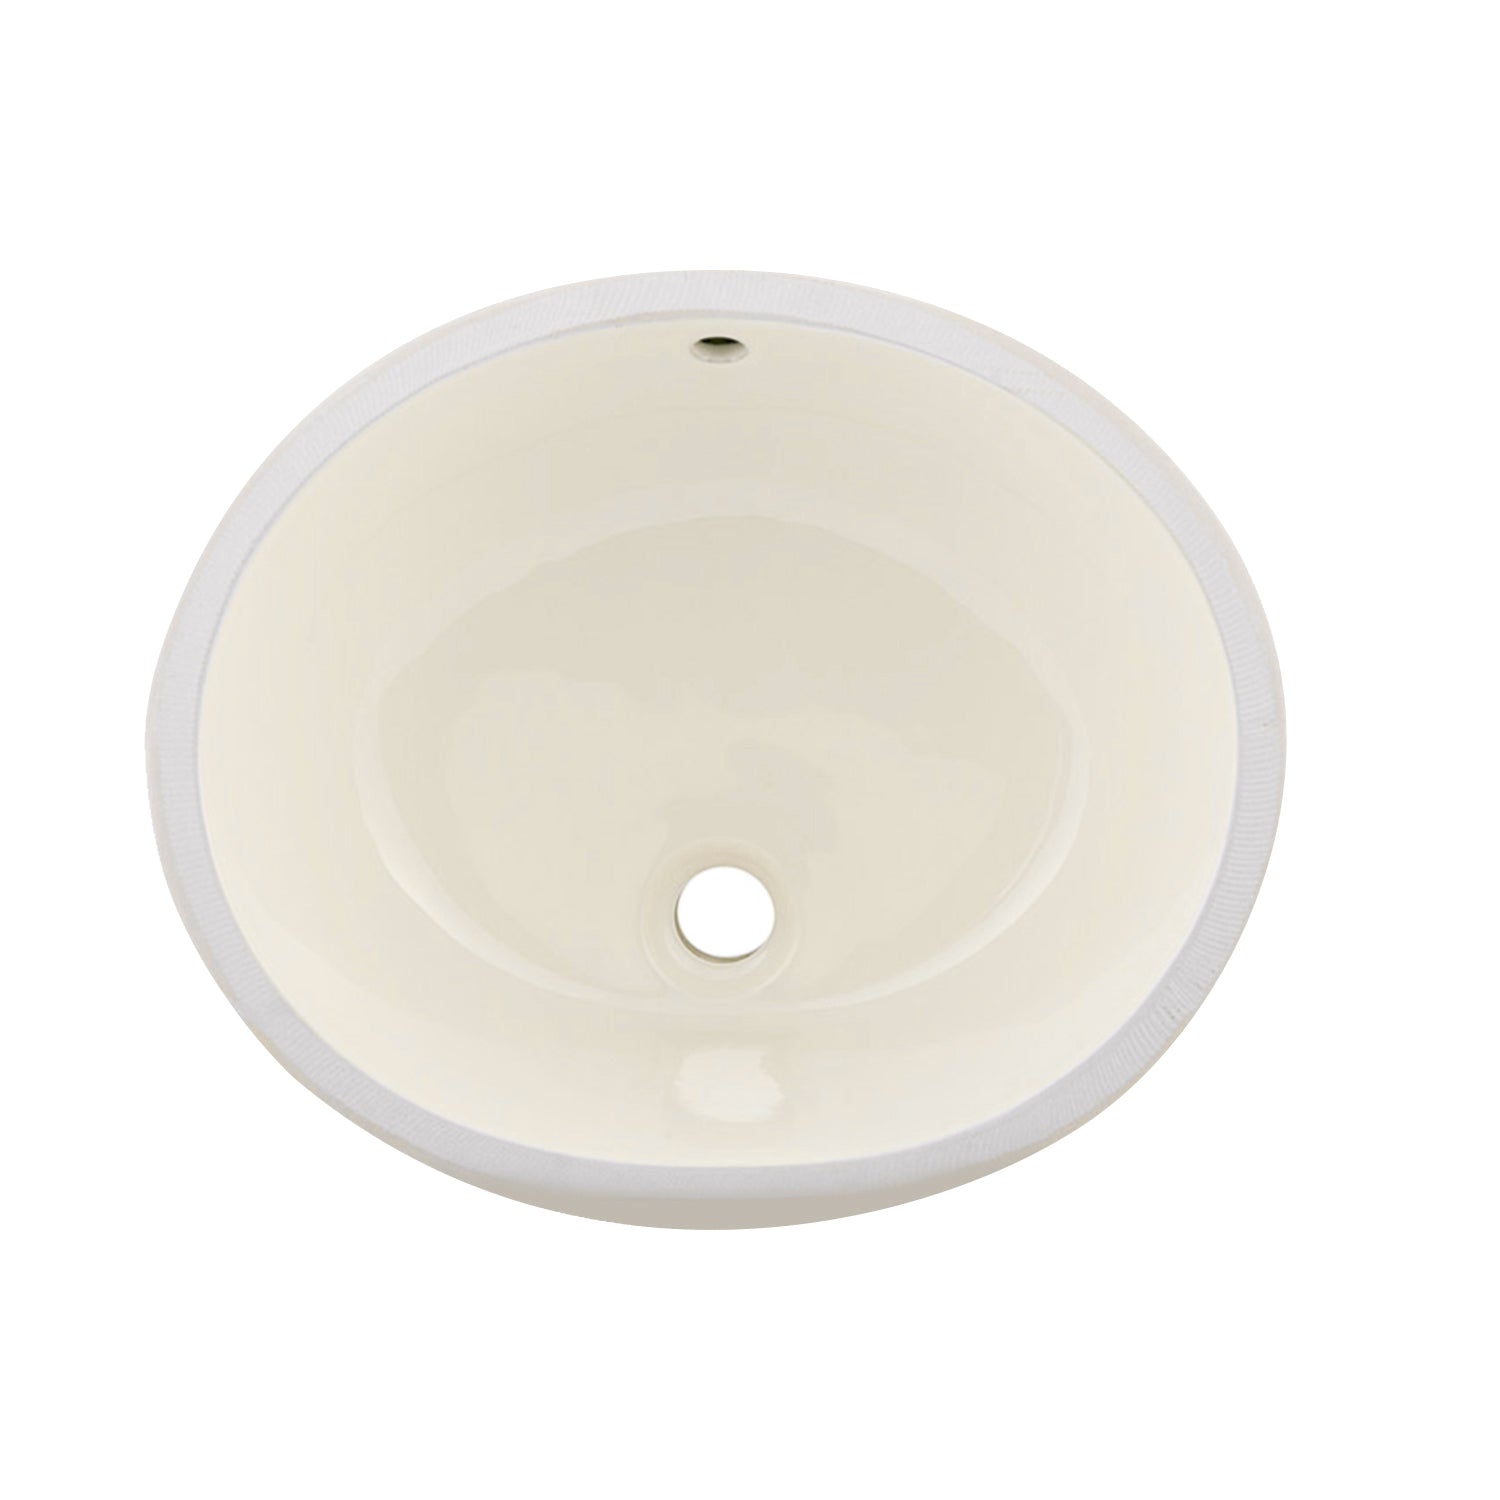 Lavabo de baño bajo encimera ovalado de cerámica DAX, acabado marfil, 19-1/2 x 16 x 8 pulgadas (BSN-201)